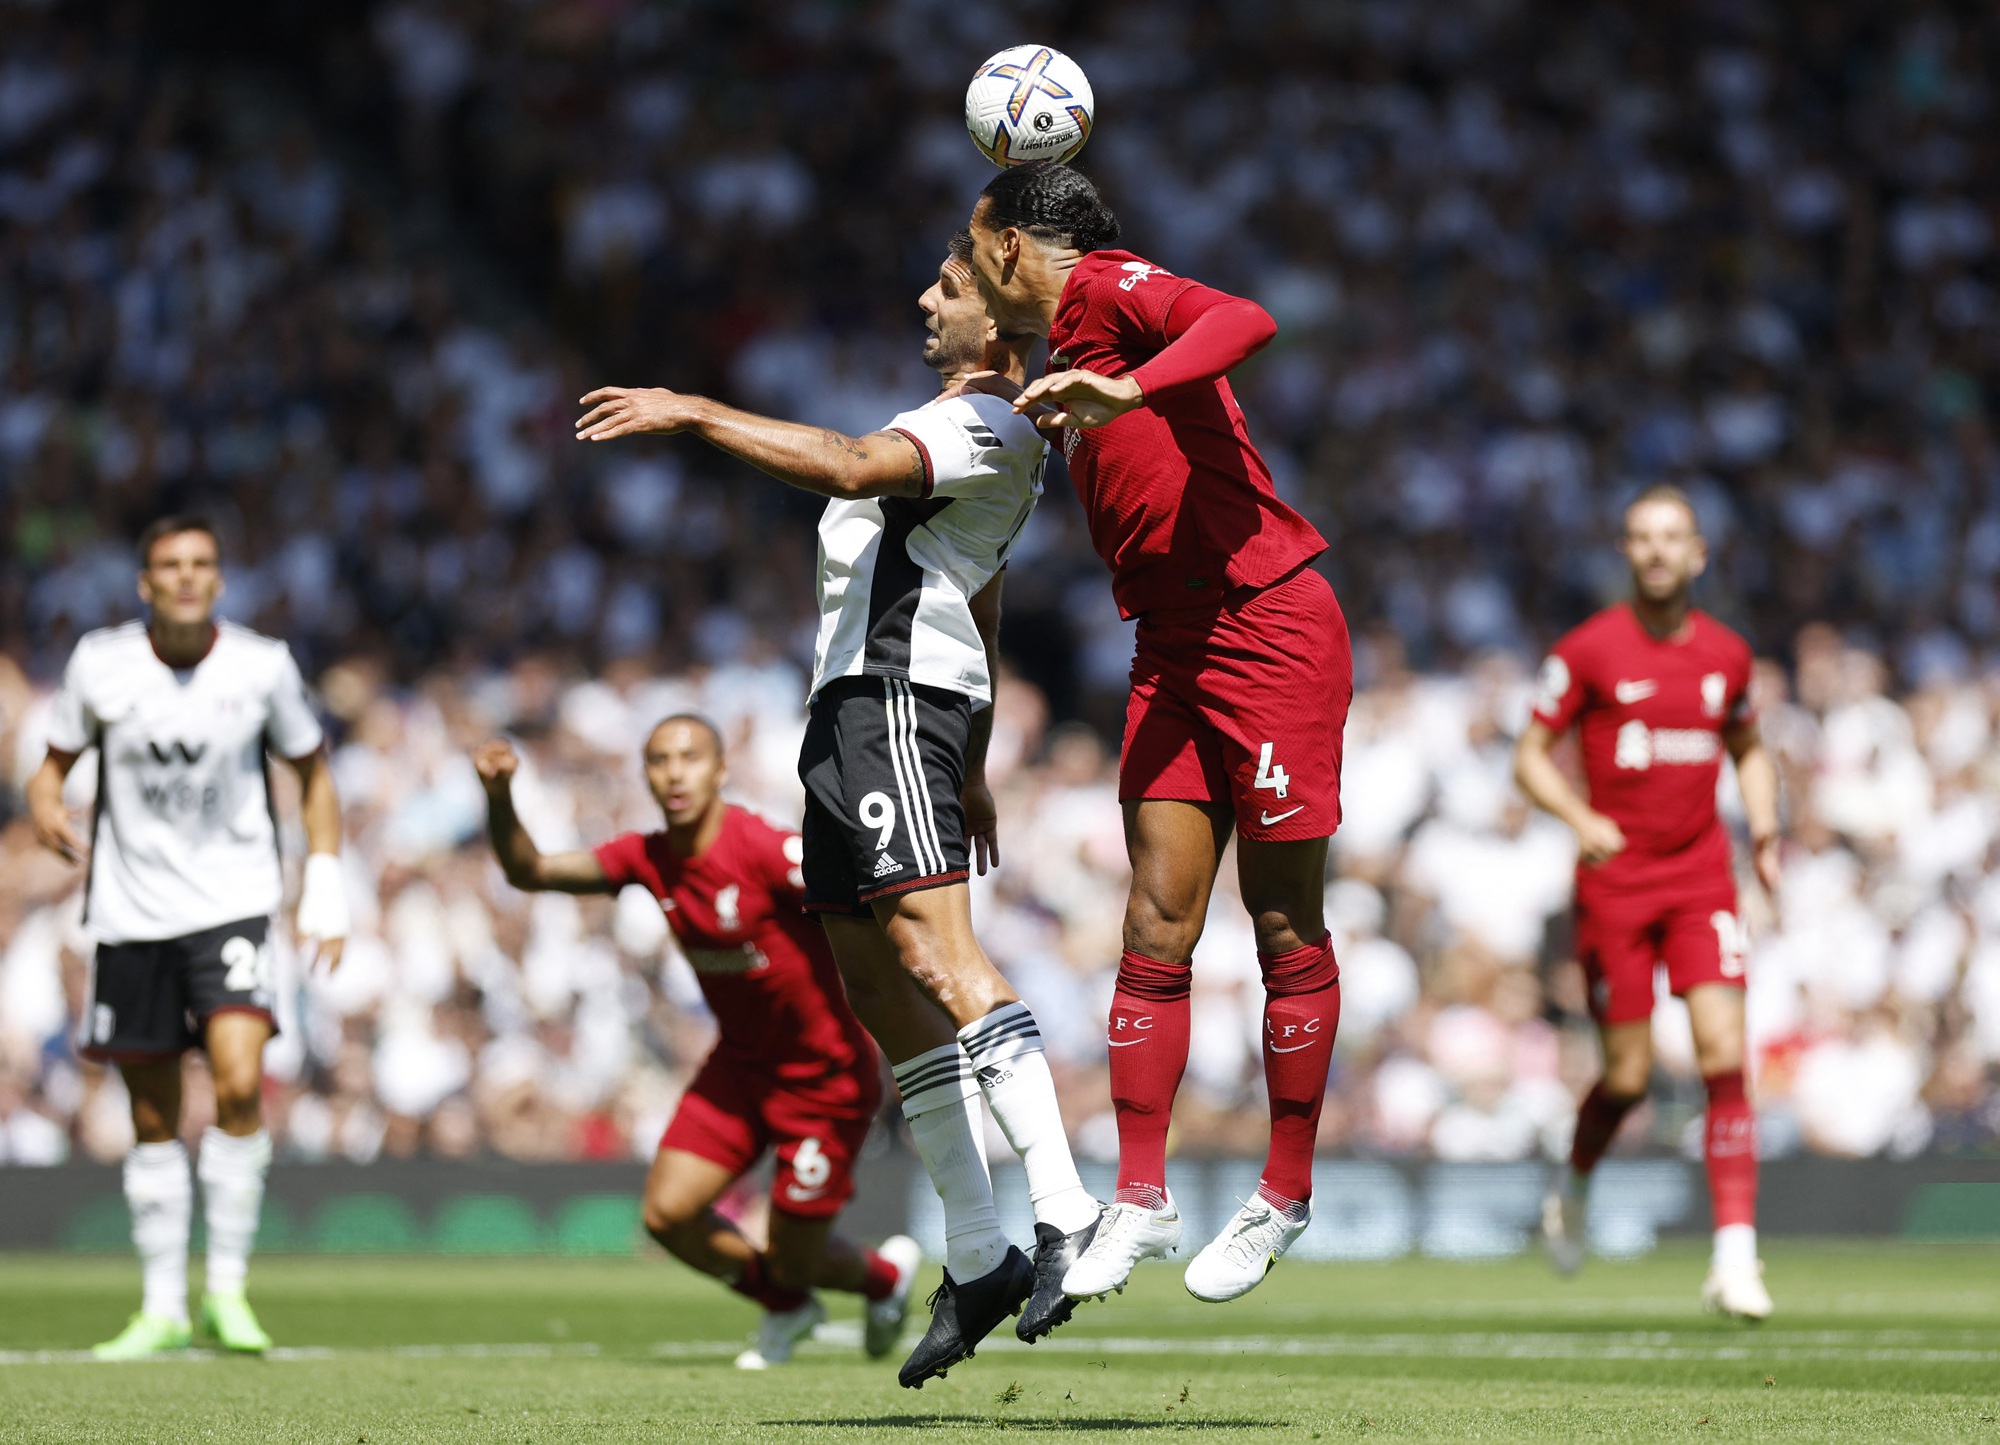 Tân binh Nunez bùng nổ, Liverpool chật vật cầm chân Fulham - Ảnh 1.